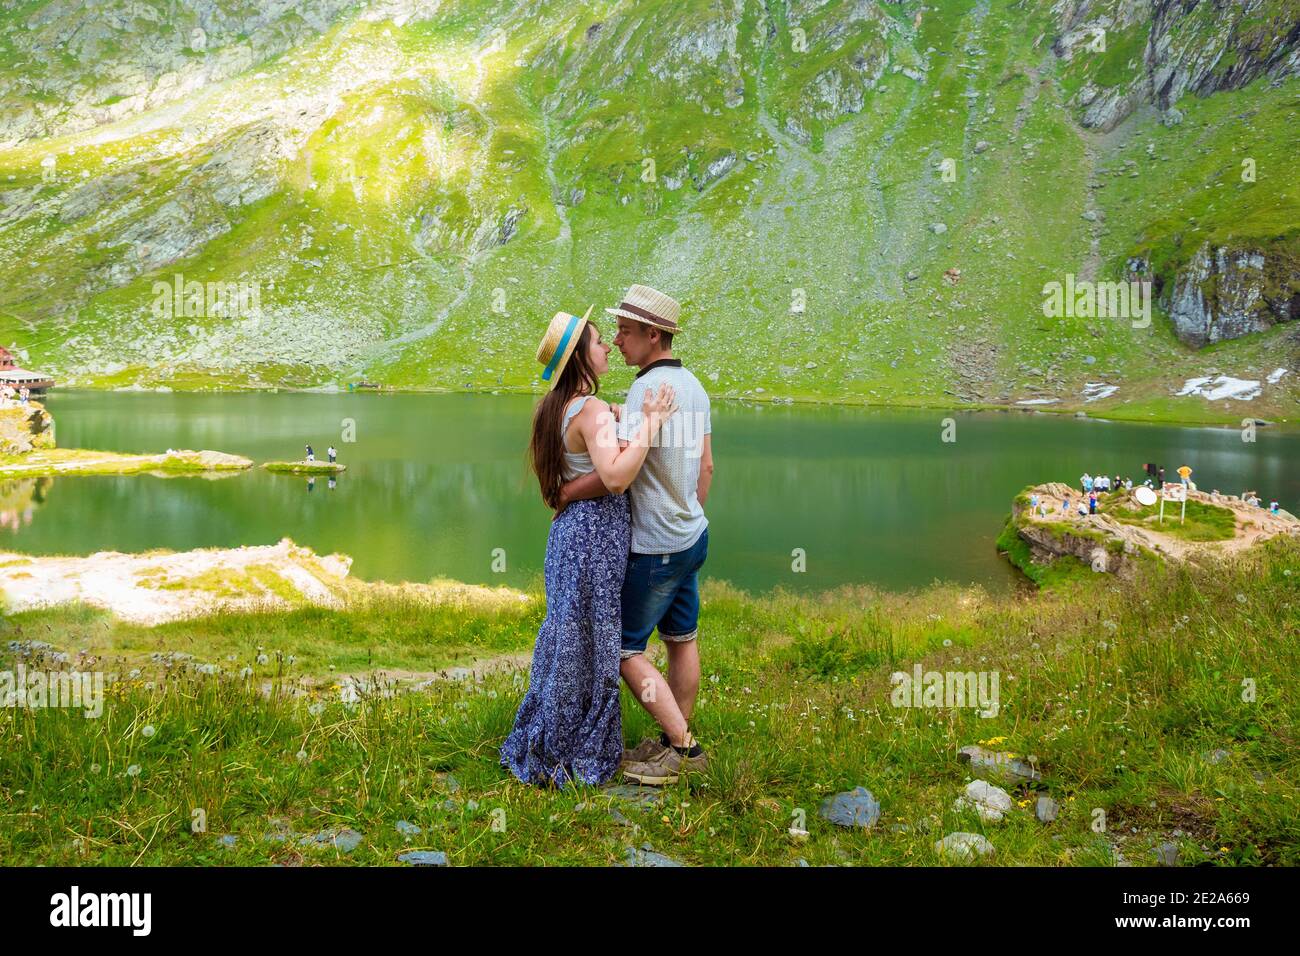 Un beau couple avant baiser près du lac Balea Banque D'Images